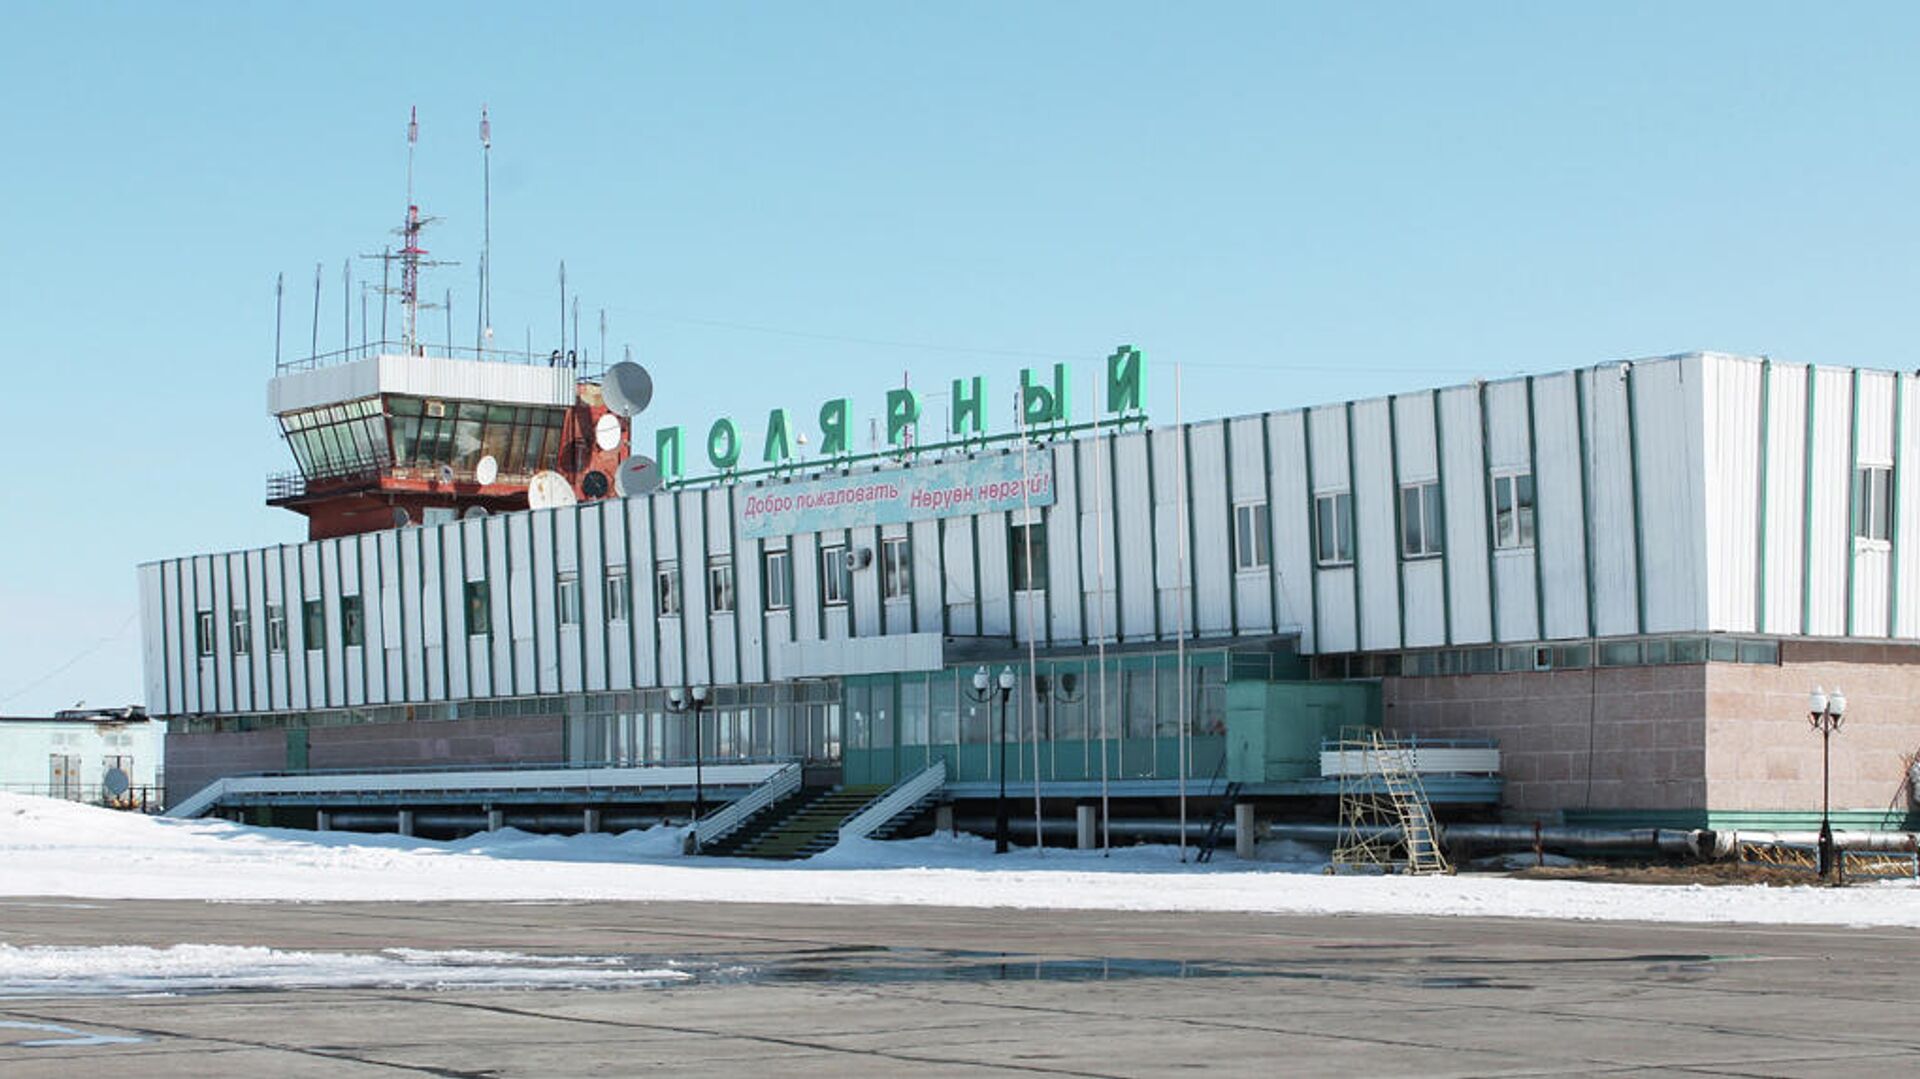 Светосигнальное оборудование установят в аэропорту Удачного в Якутии